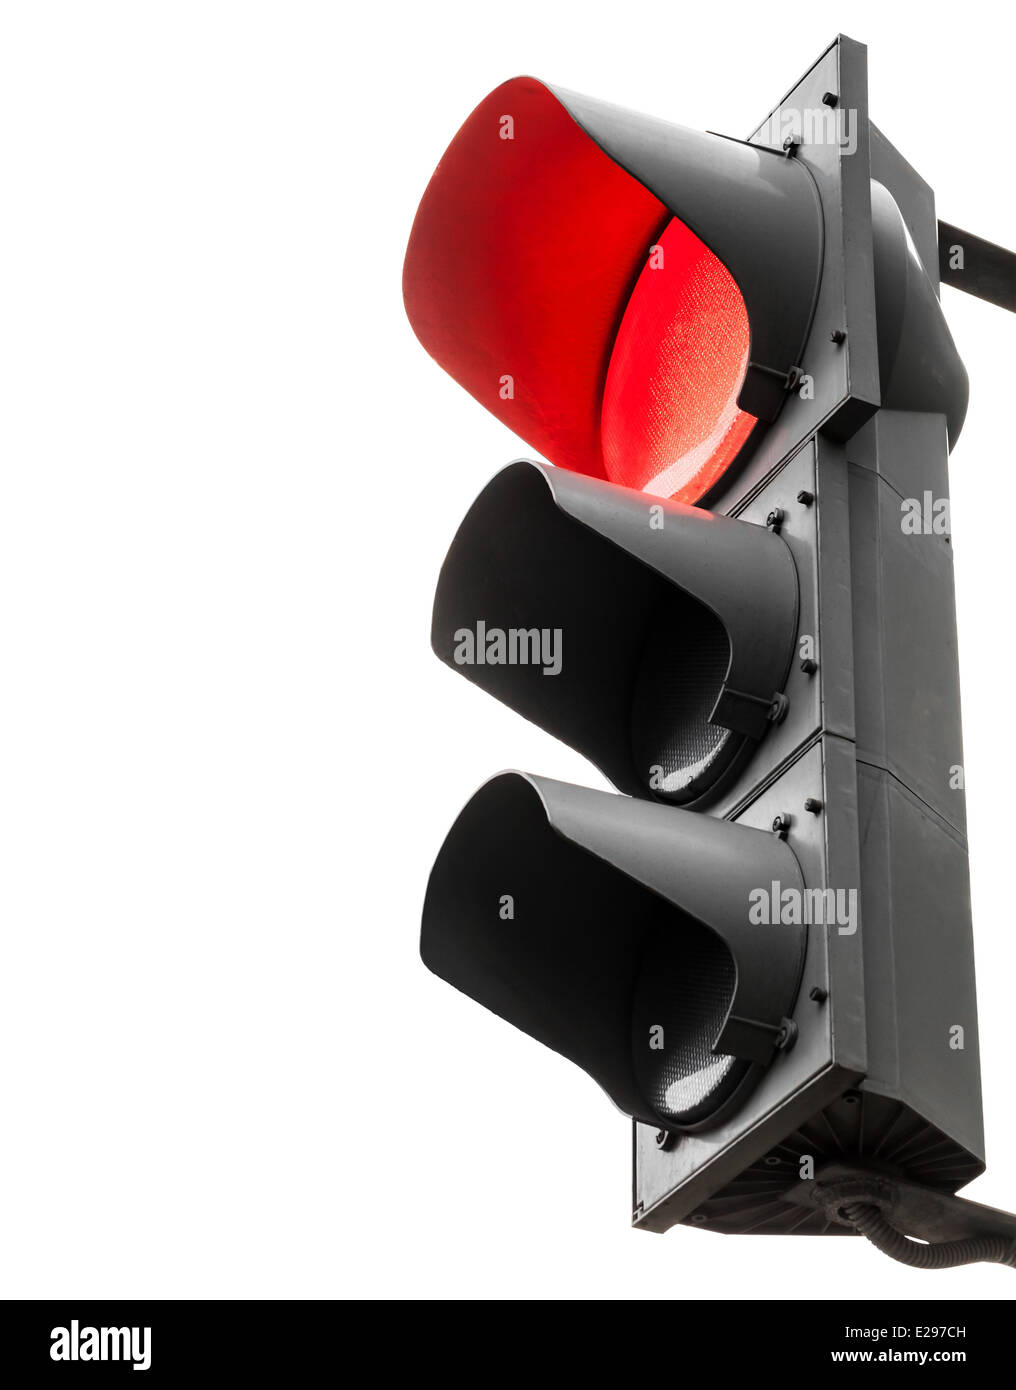 Des feux de circulation avec signal d'arrêt rouge isolated on white Banque D'Images